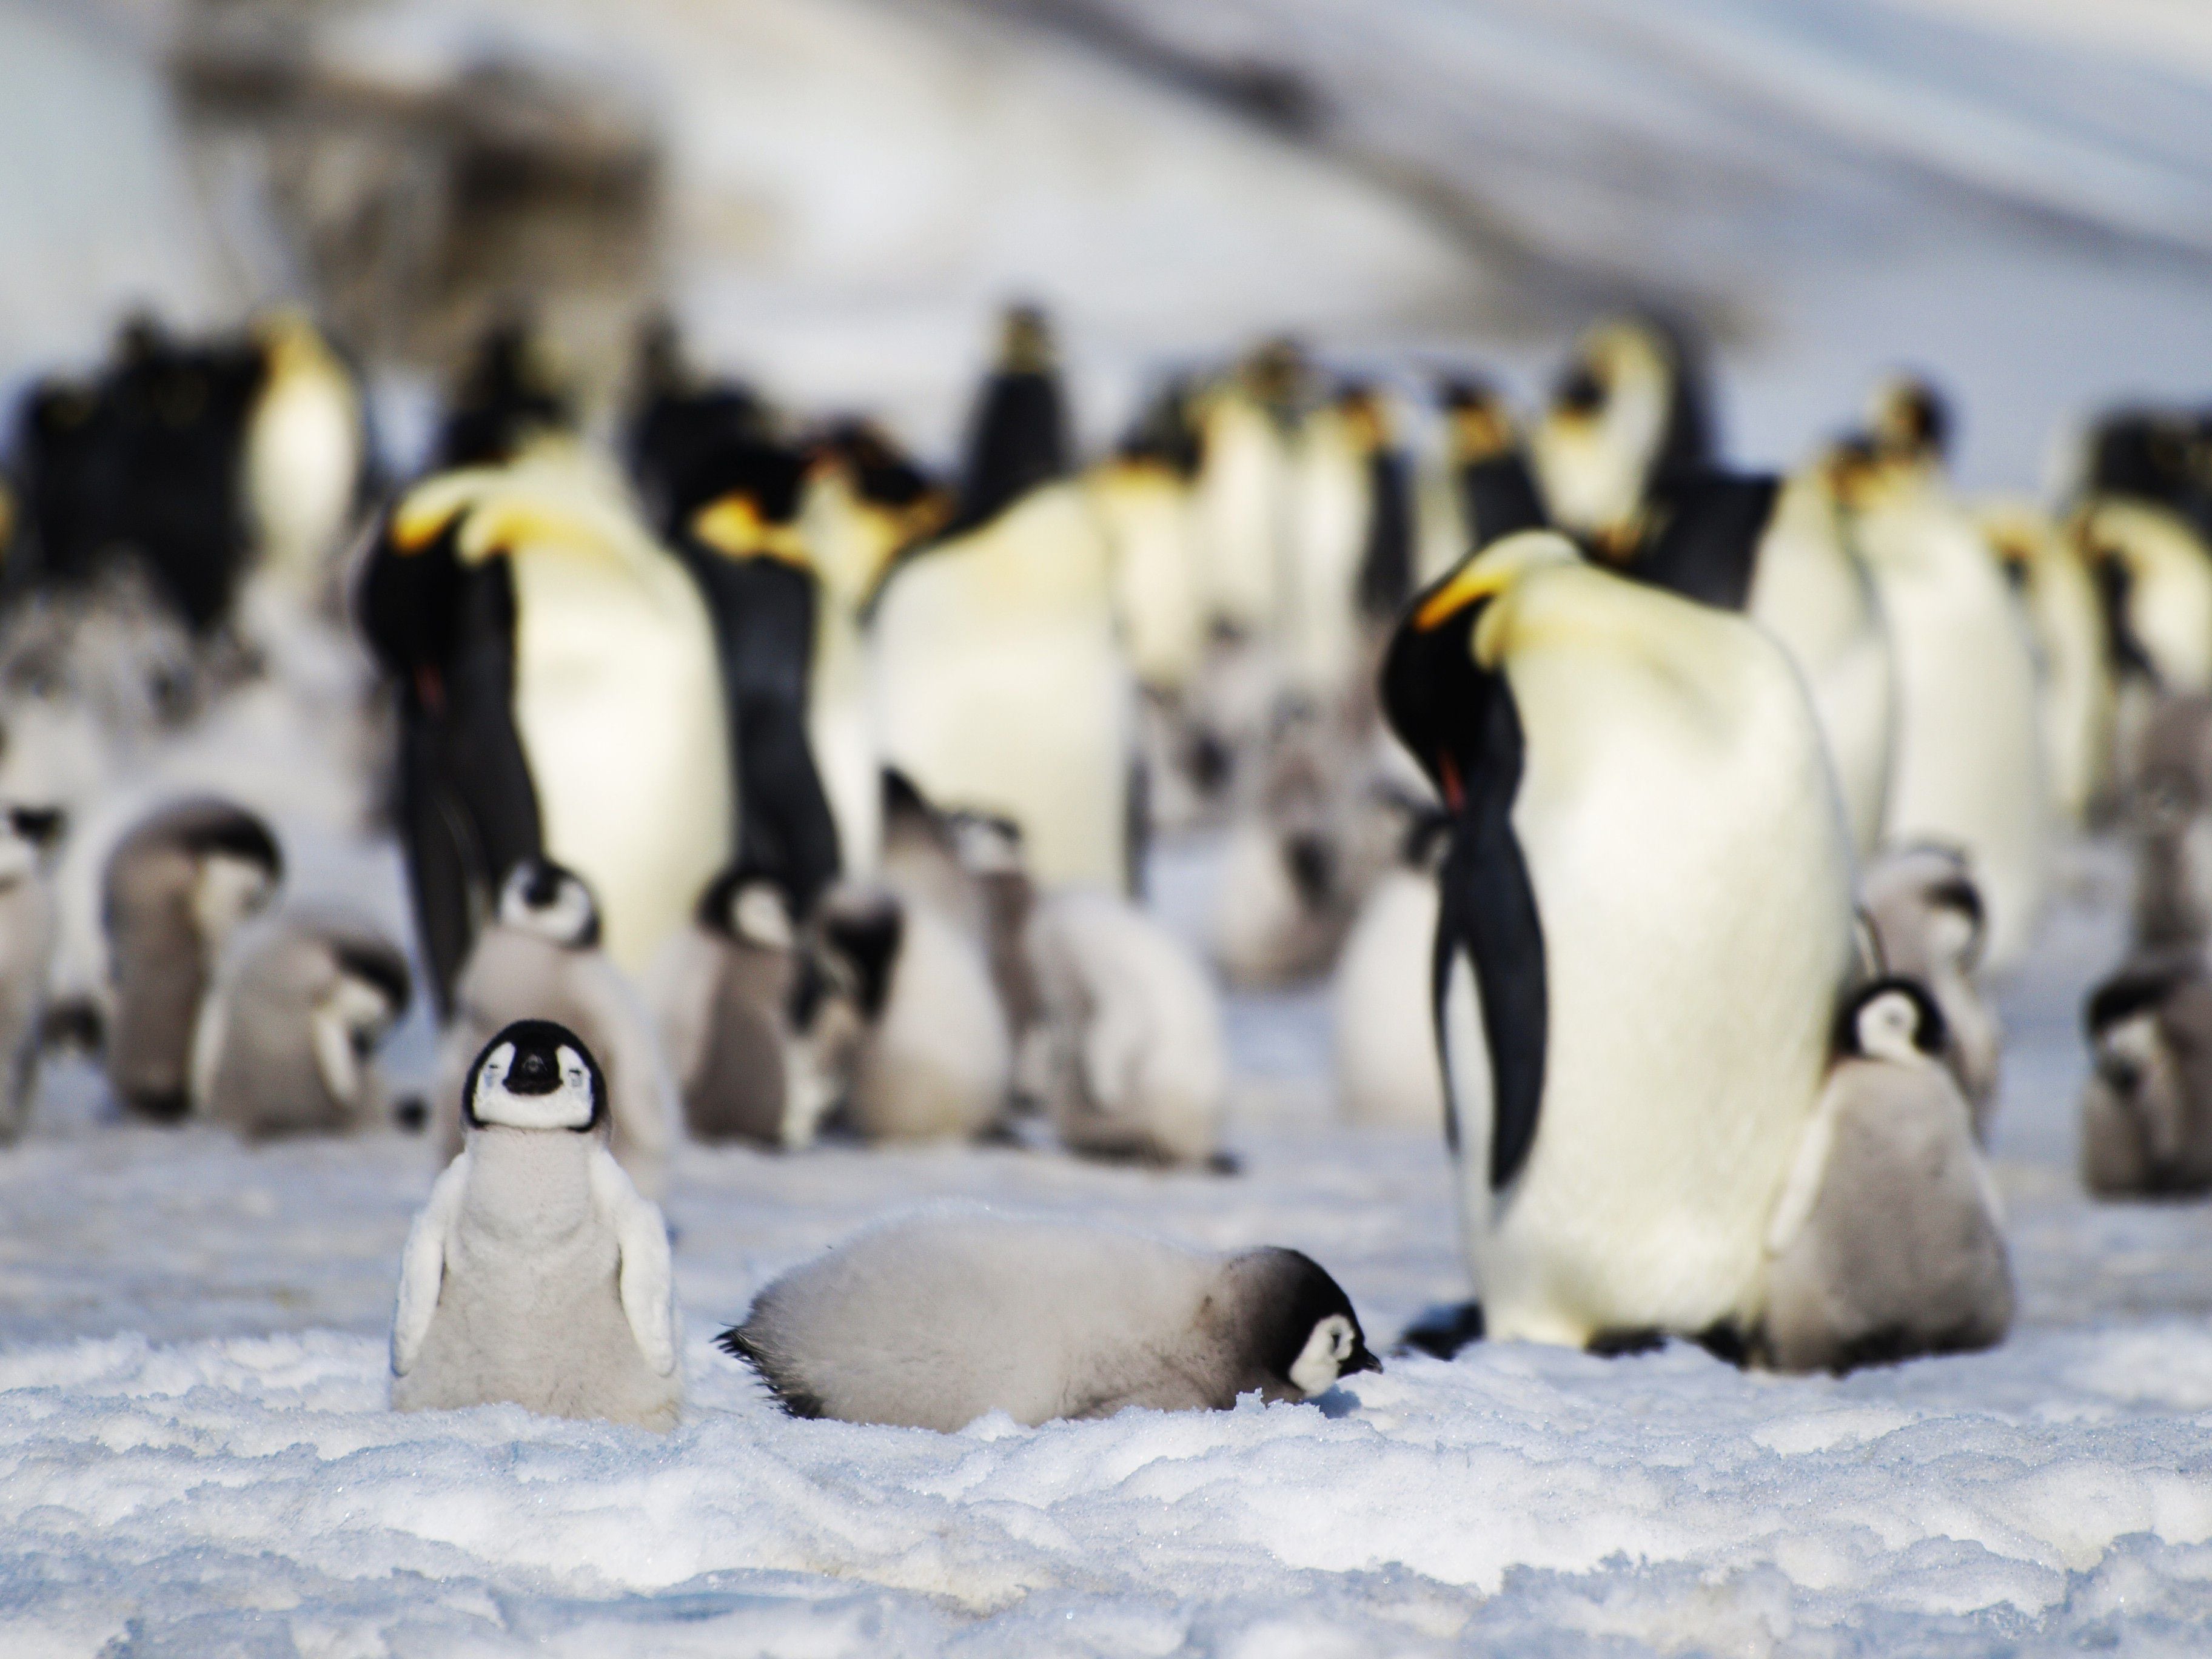 En octubre empezaron a detectarse los primeros casos de animales con gripe aviar en Antártida. Preocupa que pueda llegar a afectar a especies que solo viven en esa región del mundo 